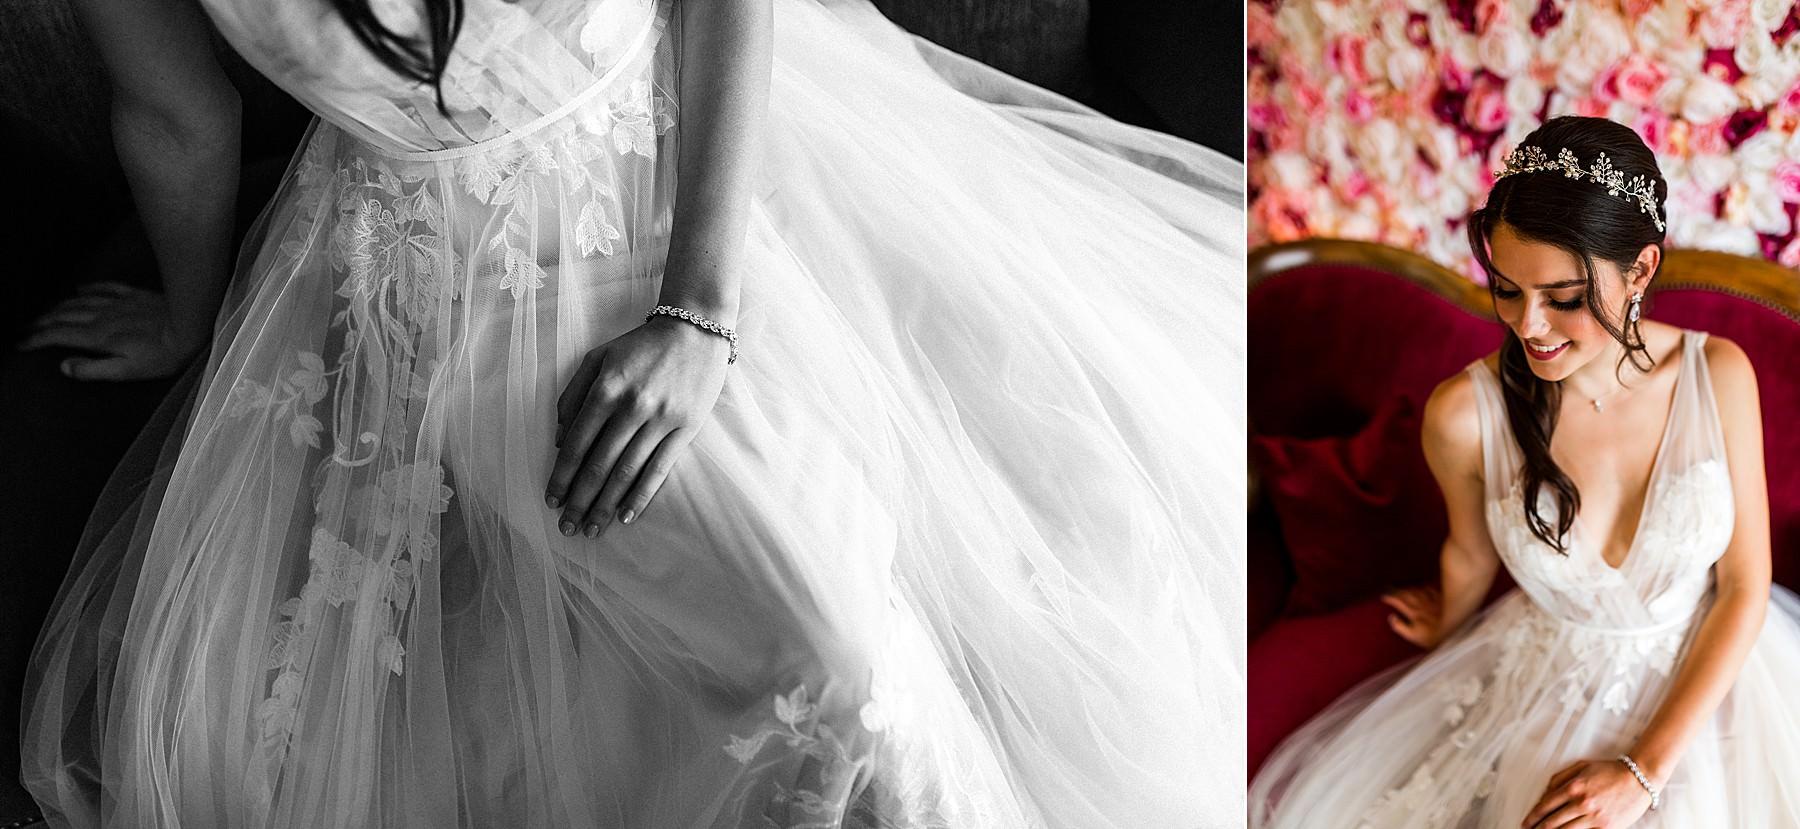 Brautkleid von Ivory und Blush in Aalen